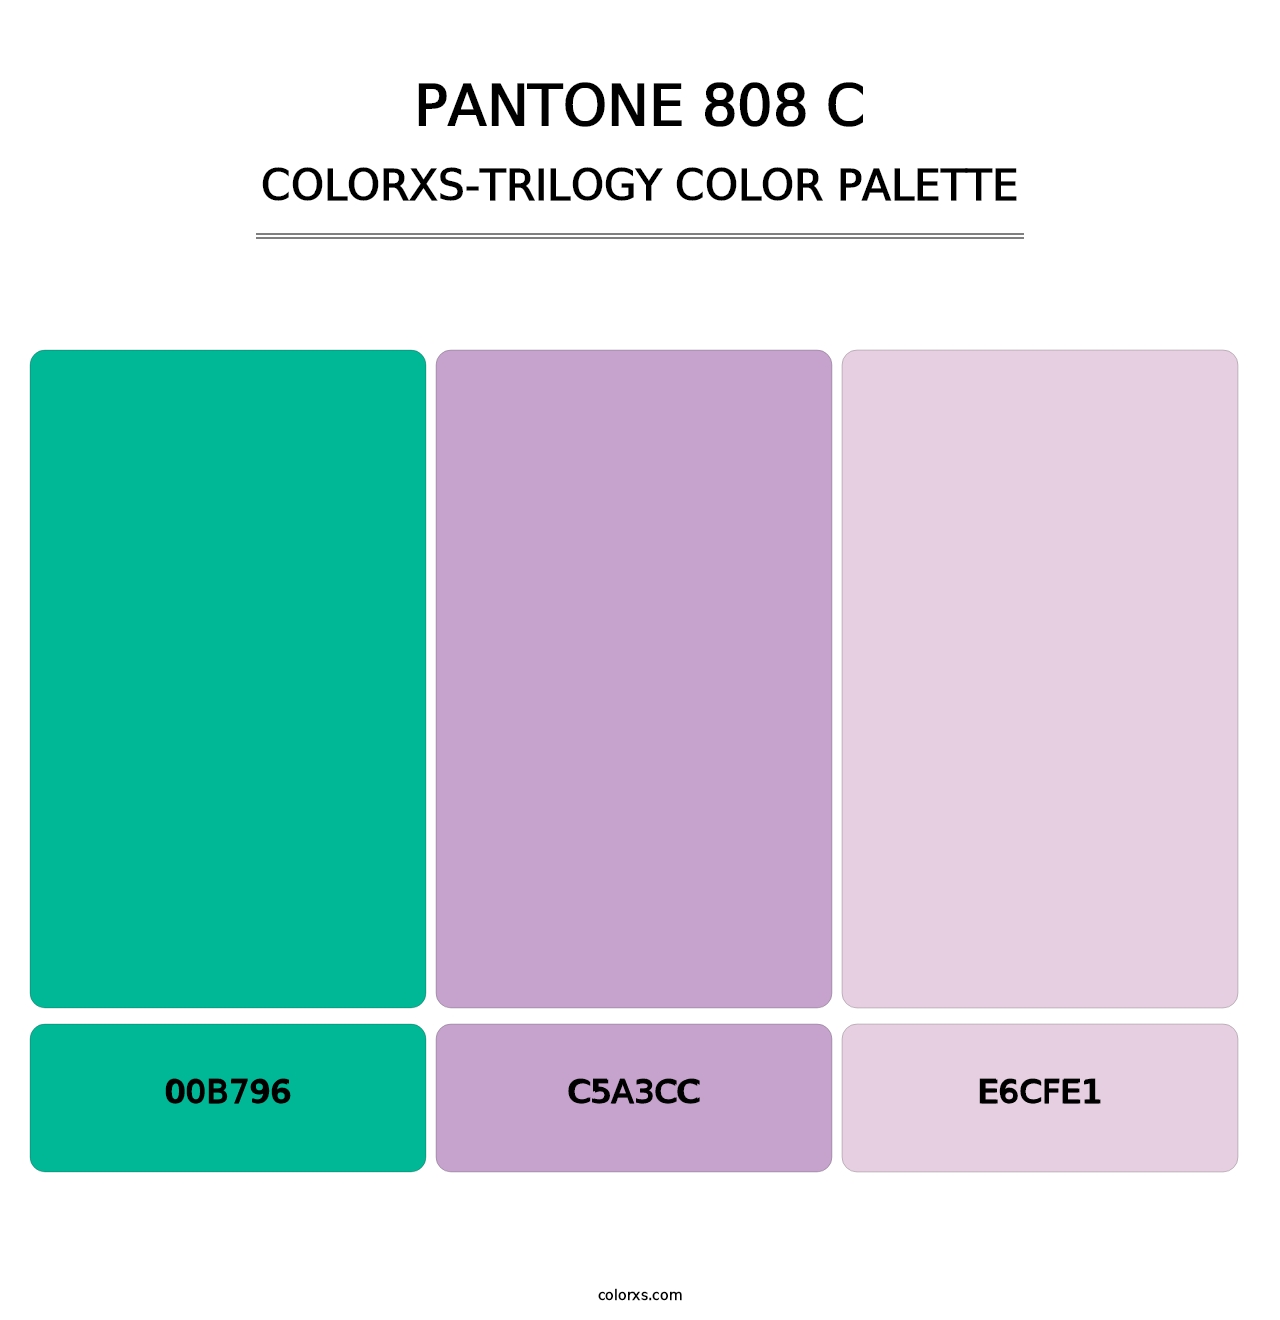 PANTONE 808 C - Colorxs Trilogy Palette